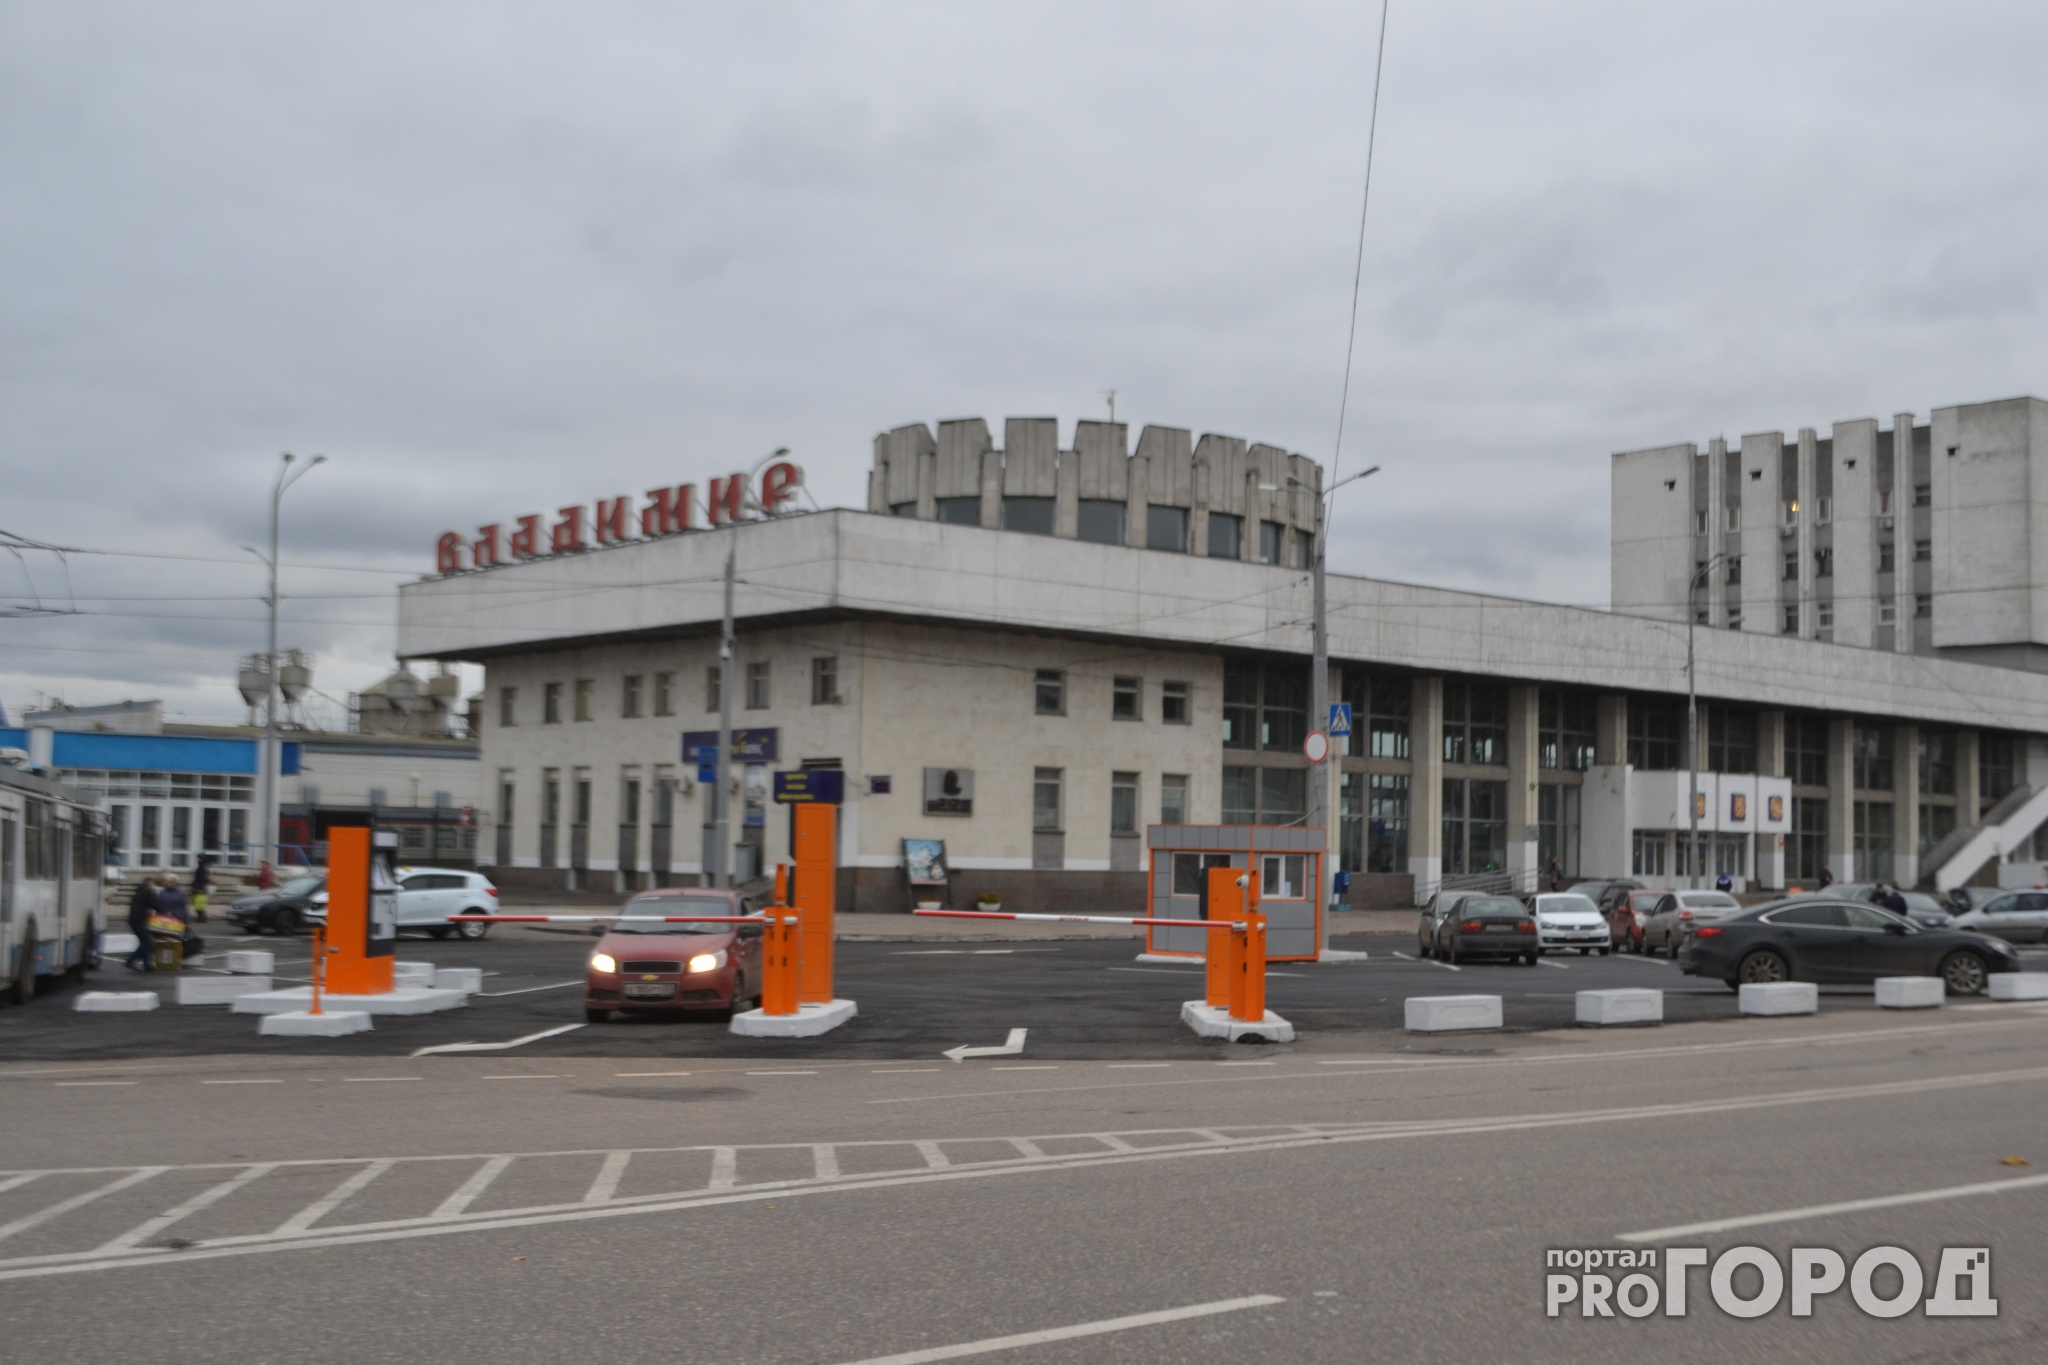 На новую парковку у владимирского вокзала не хотели пускать "Реанимацию"